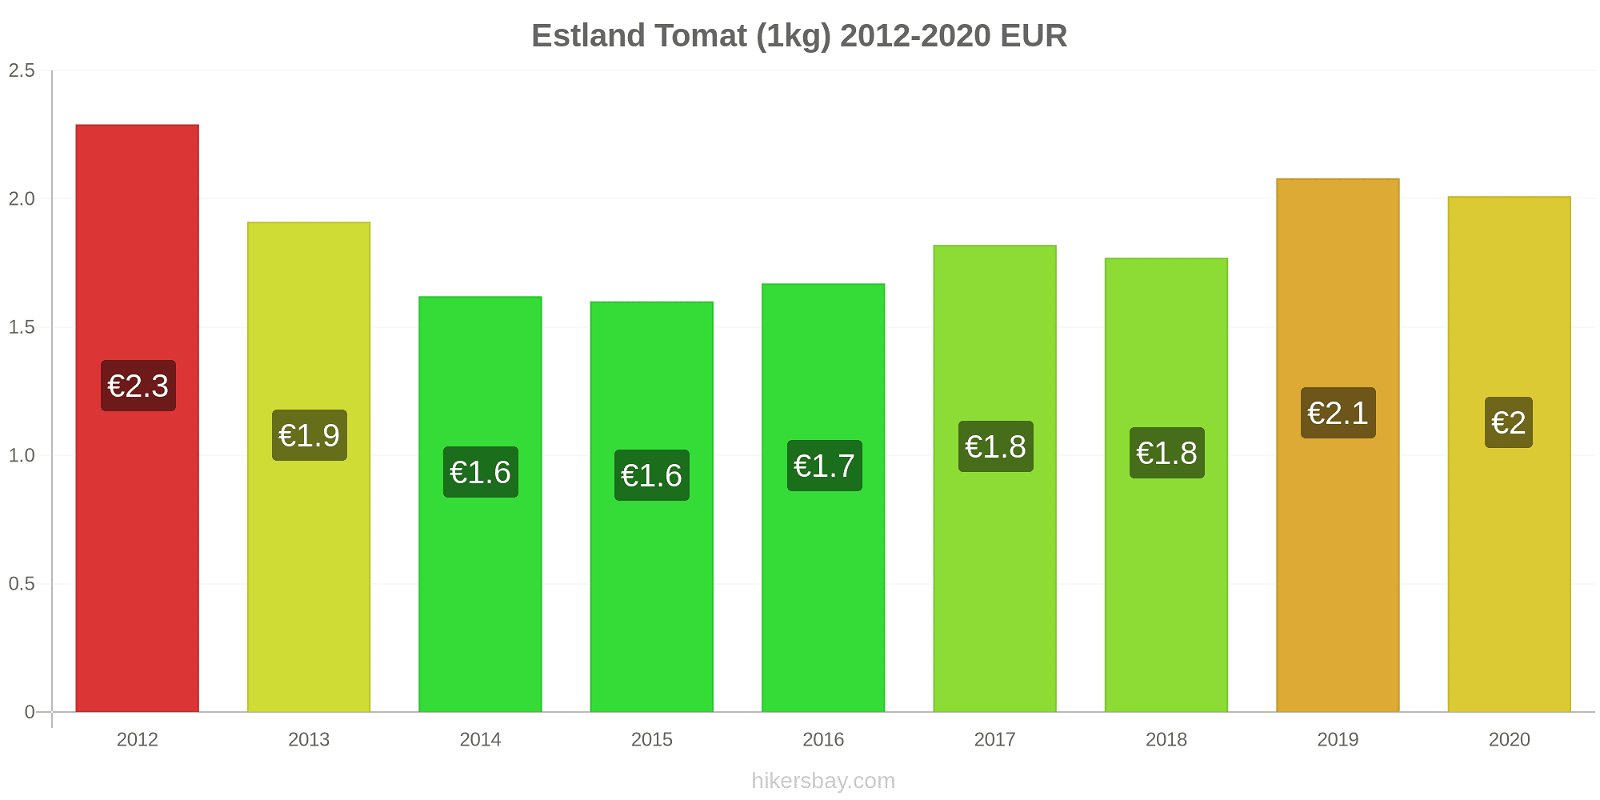 Estland prisendringer Tomat (1kg) hikersbay.com